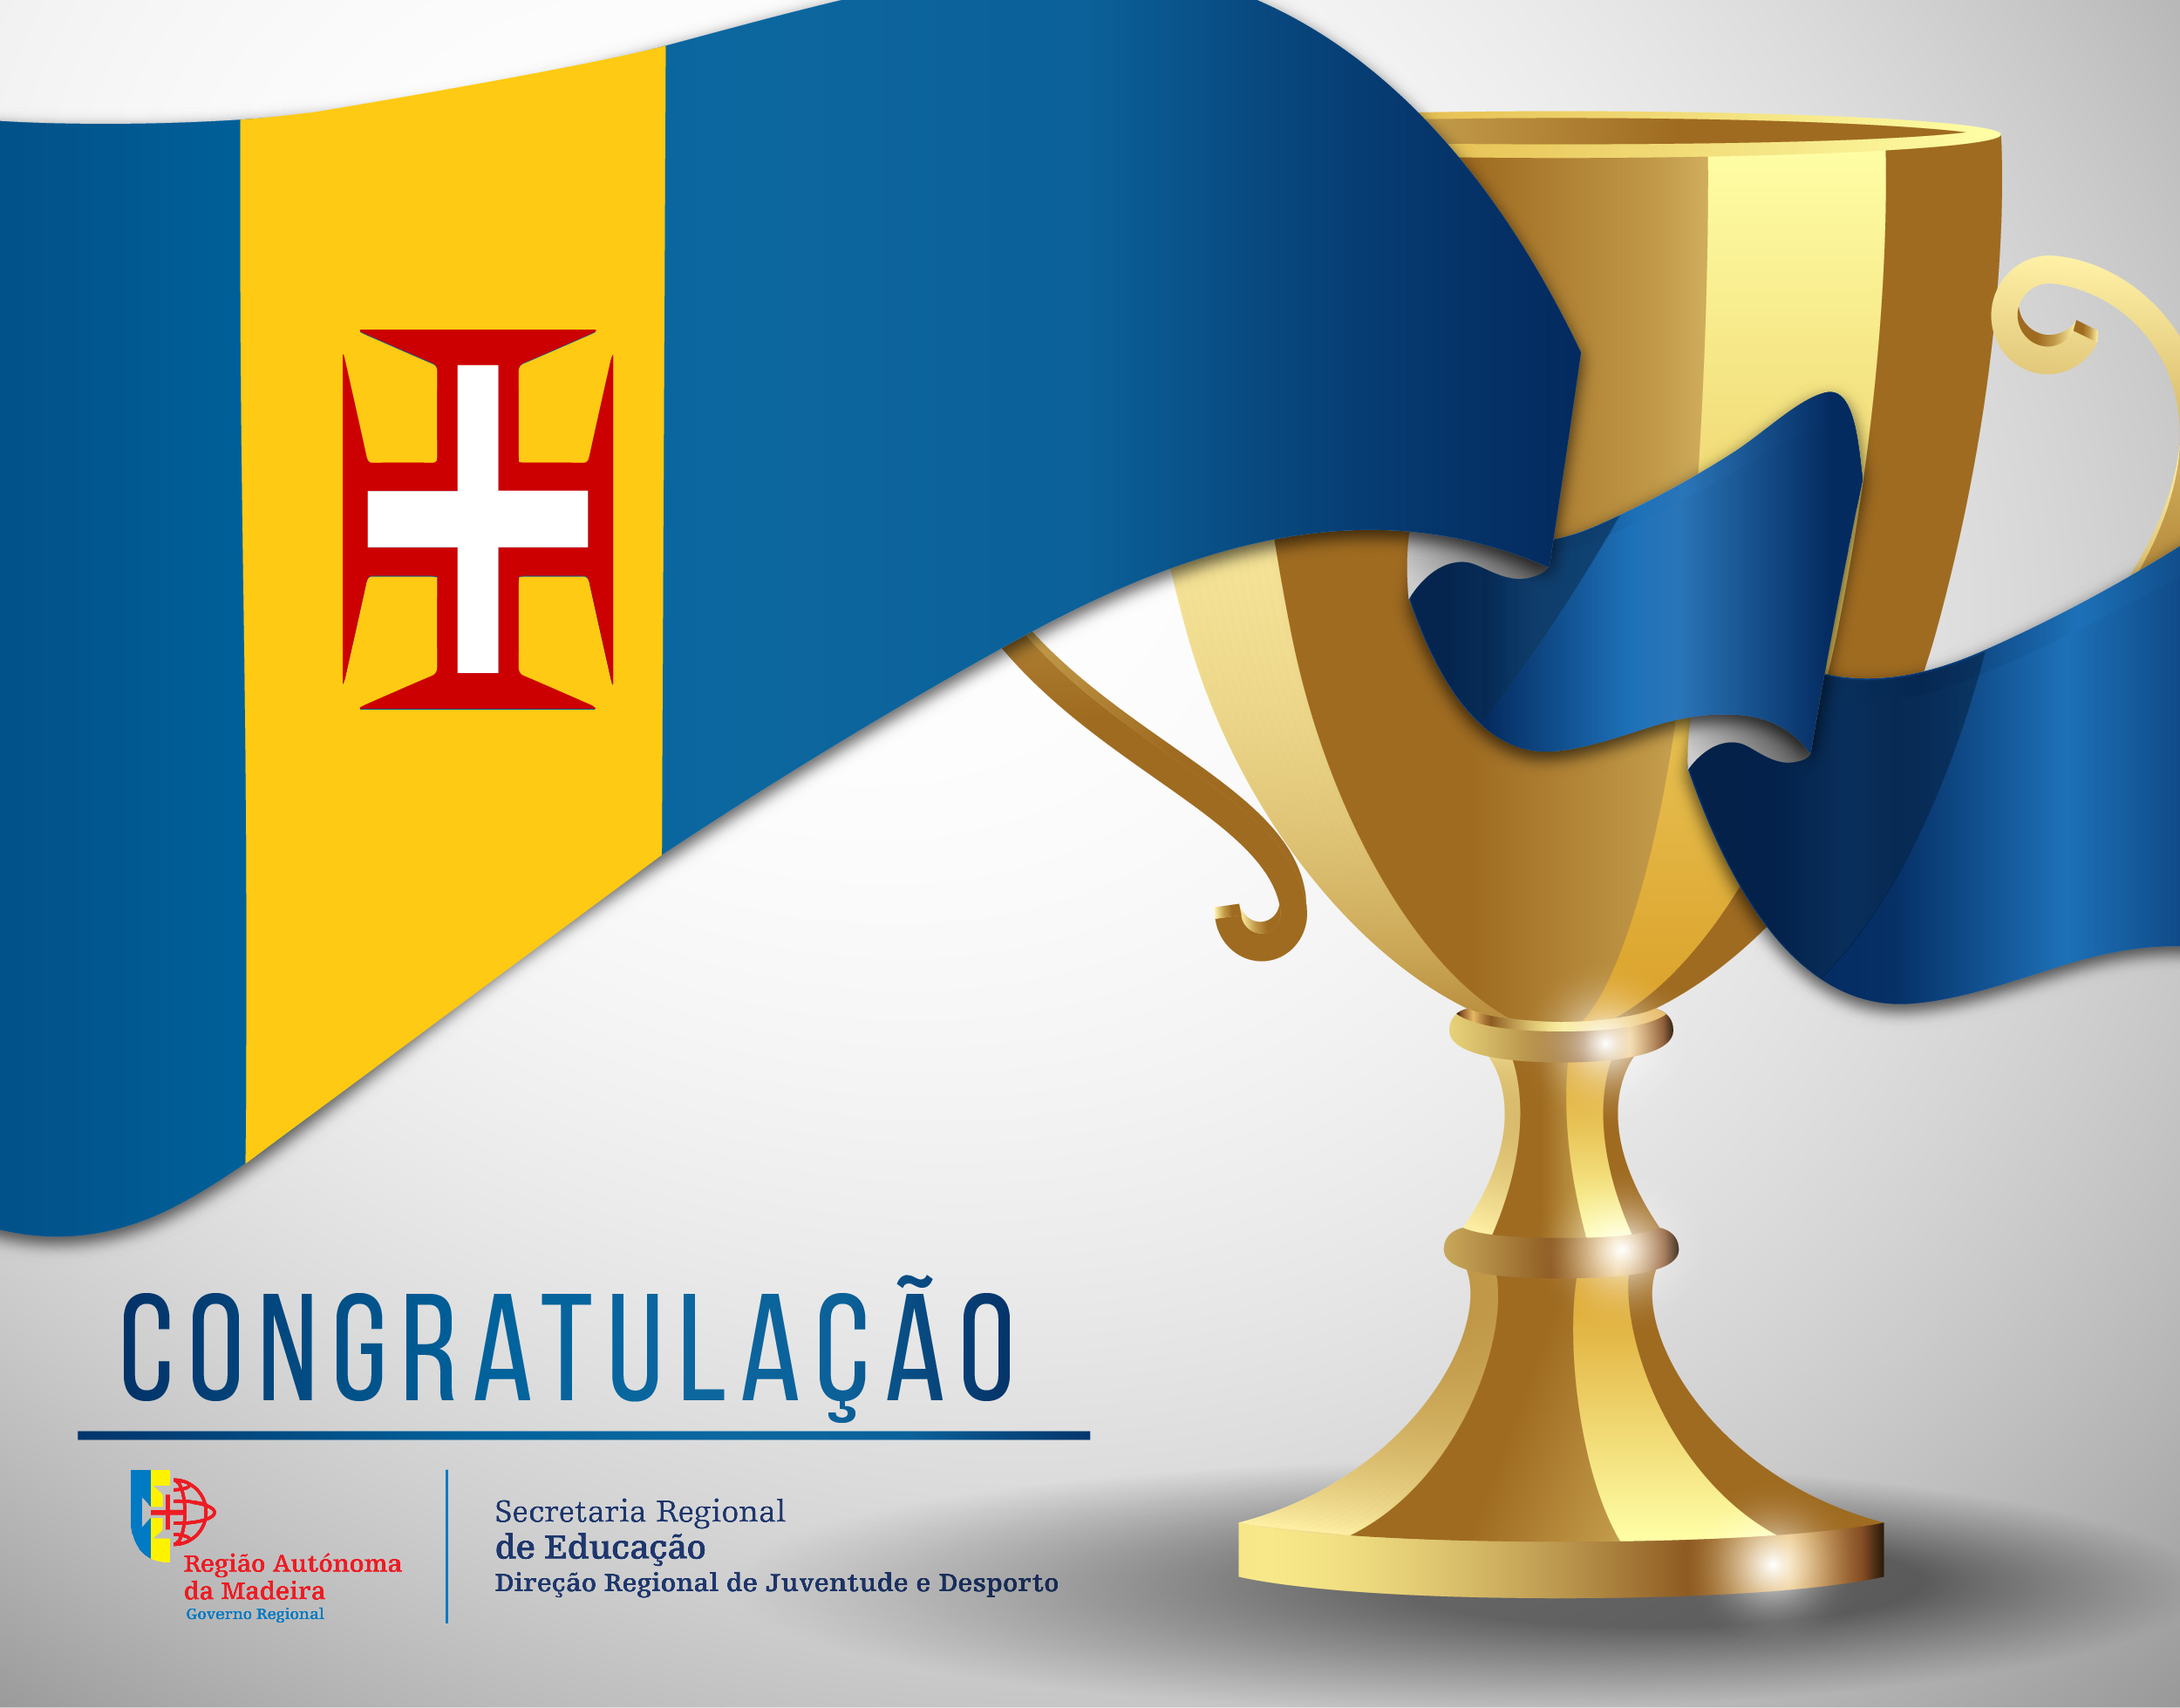 Congratulação - Verónica Isabel Silva (CN Funchal)